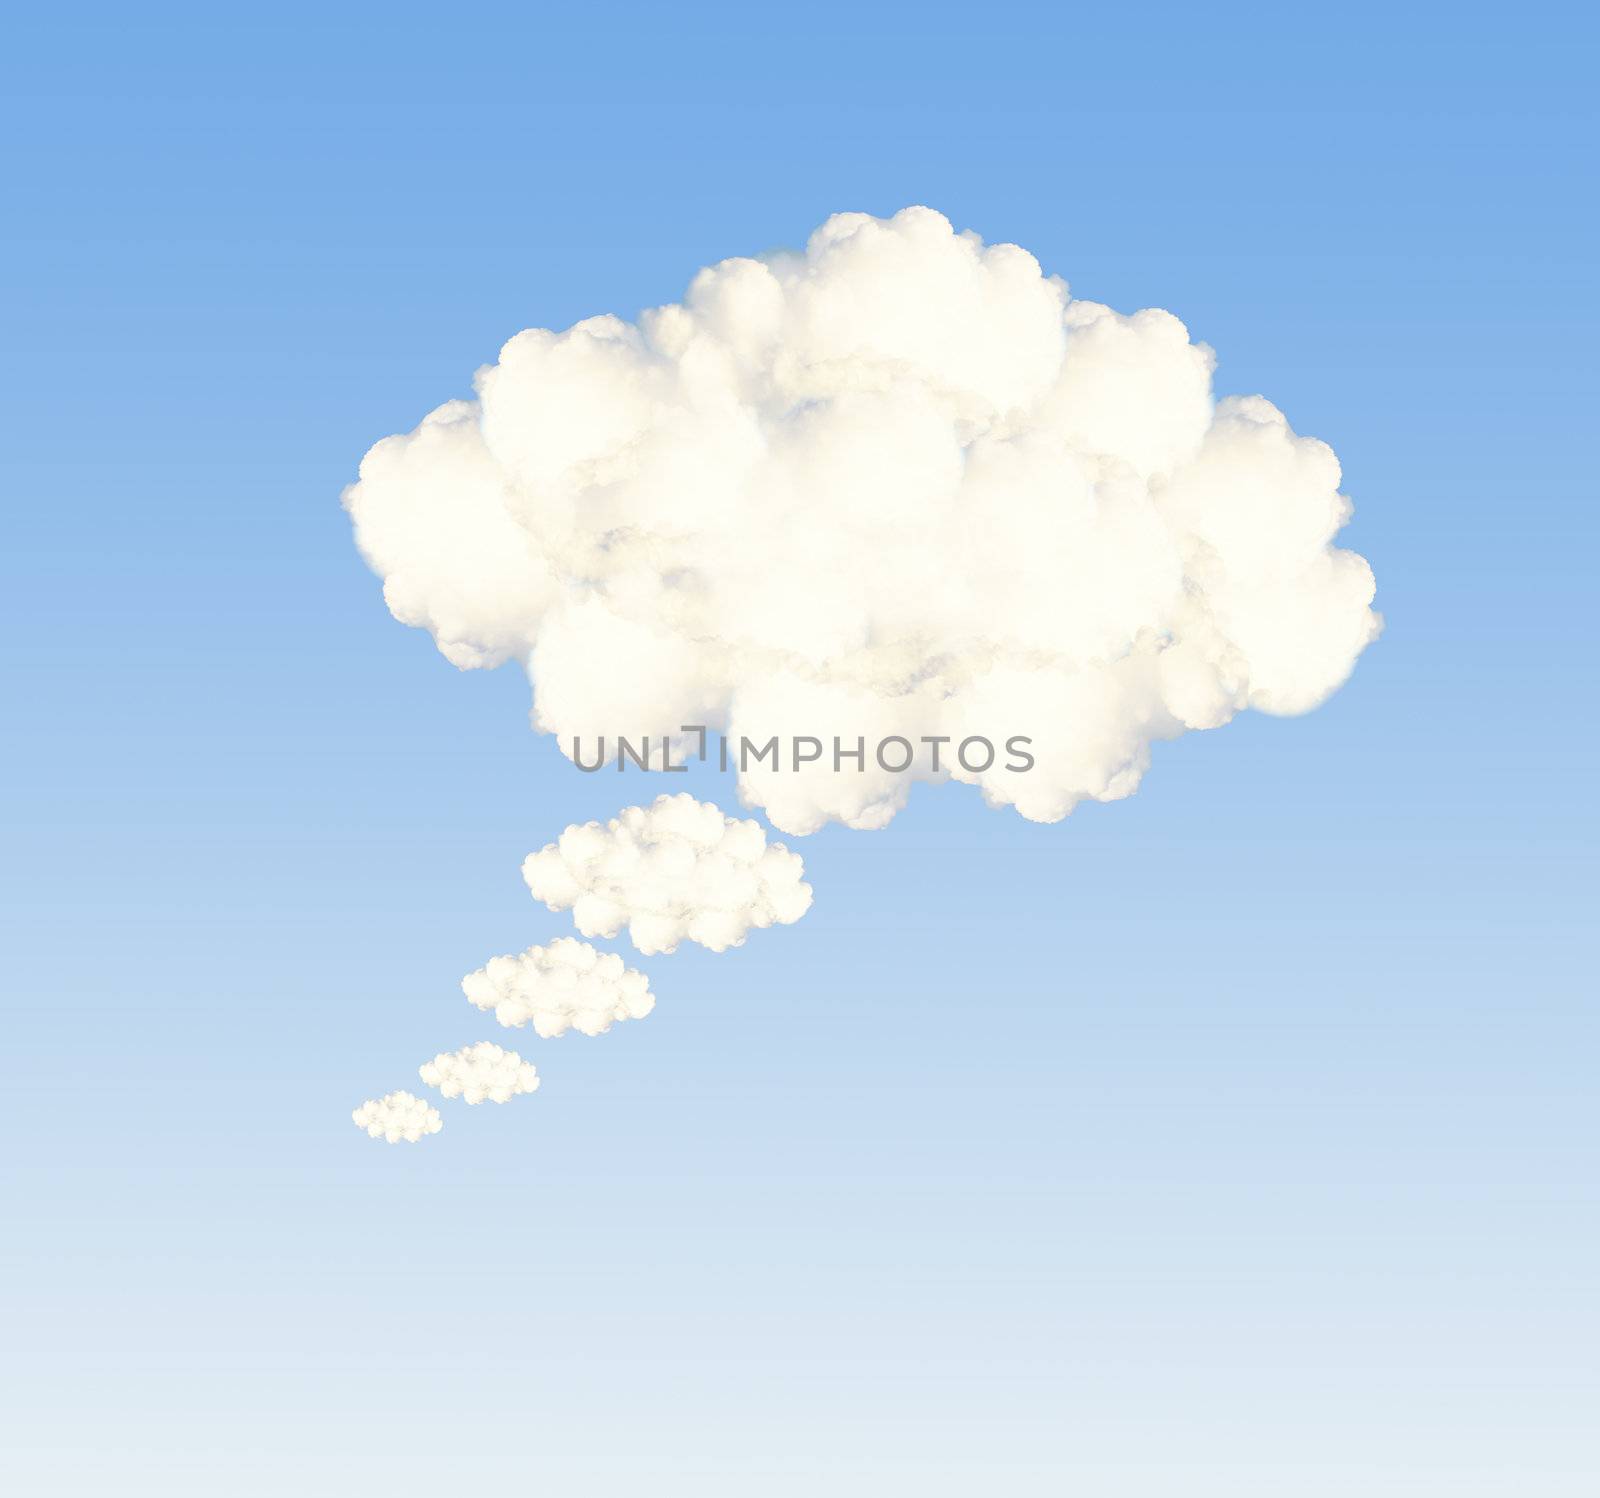 Speech bubble clouds by bajita111122